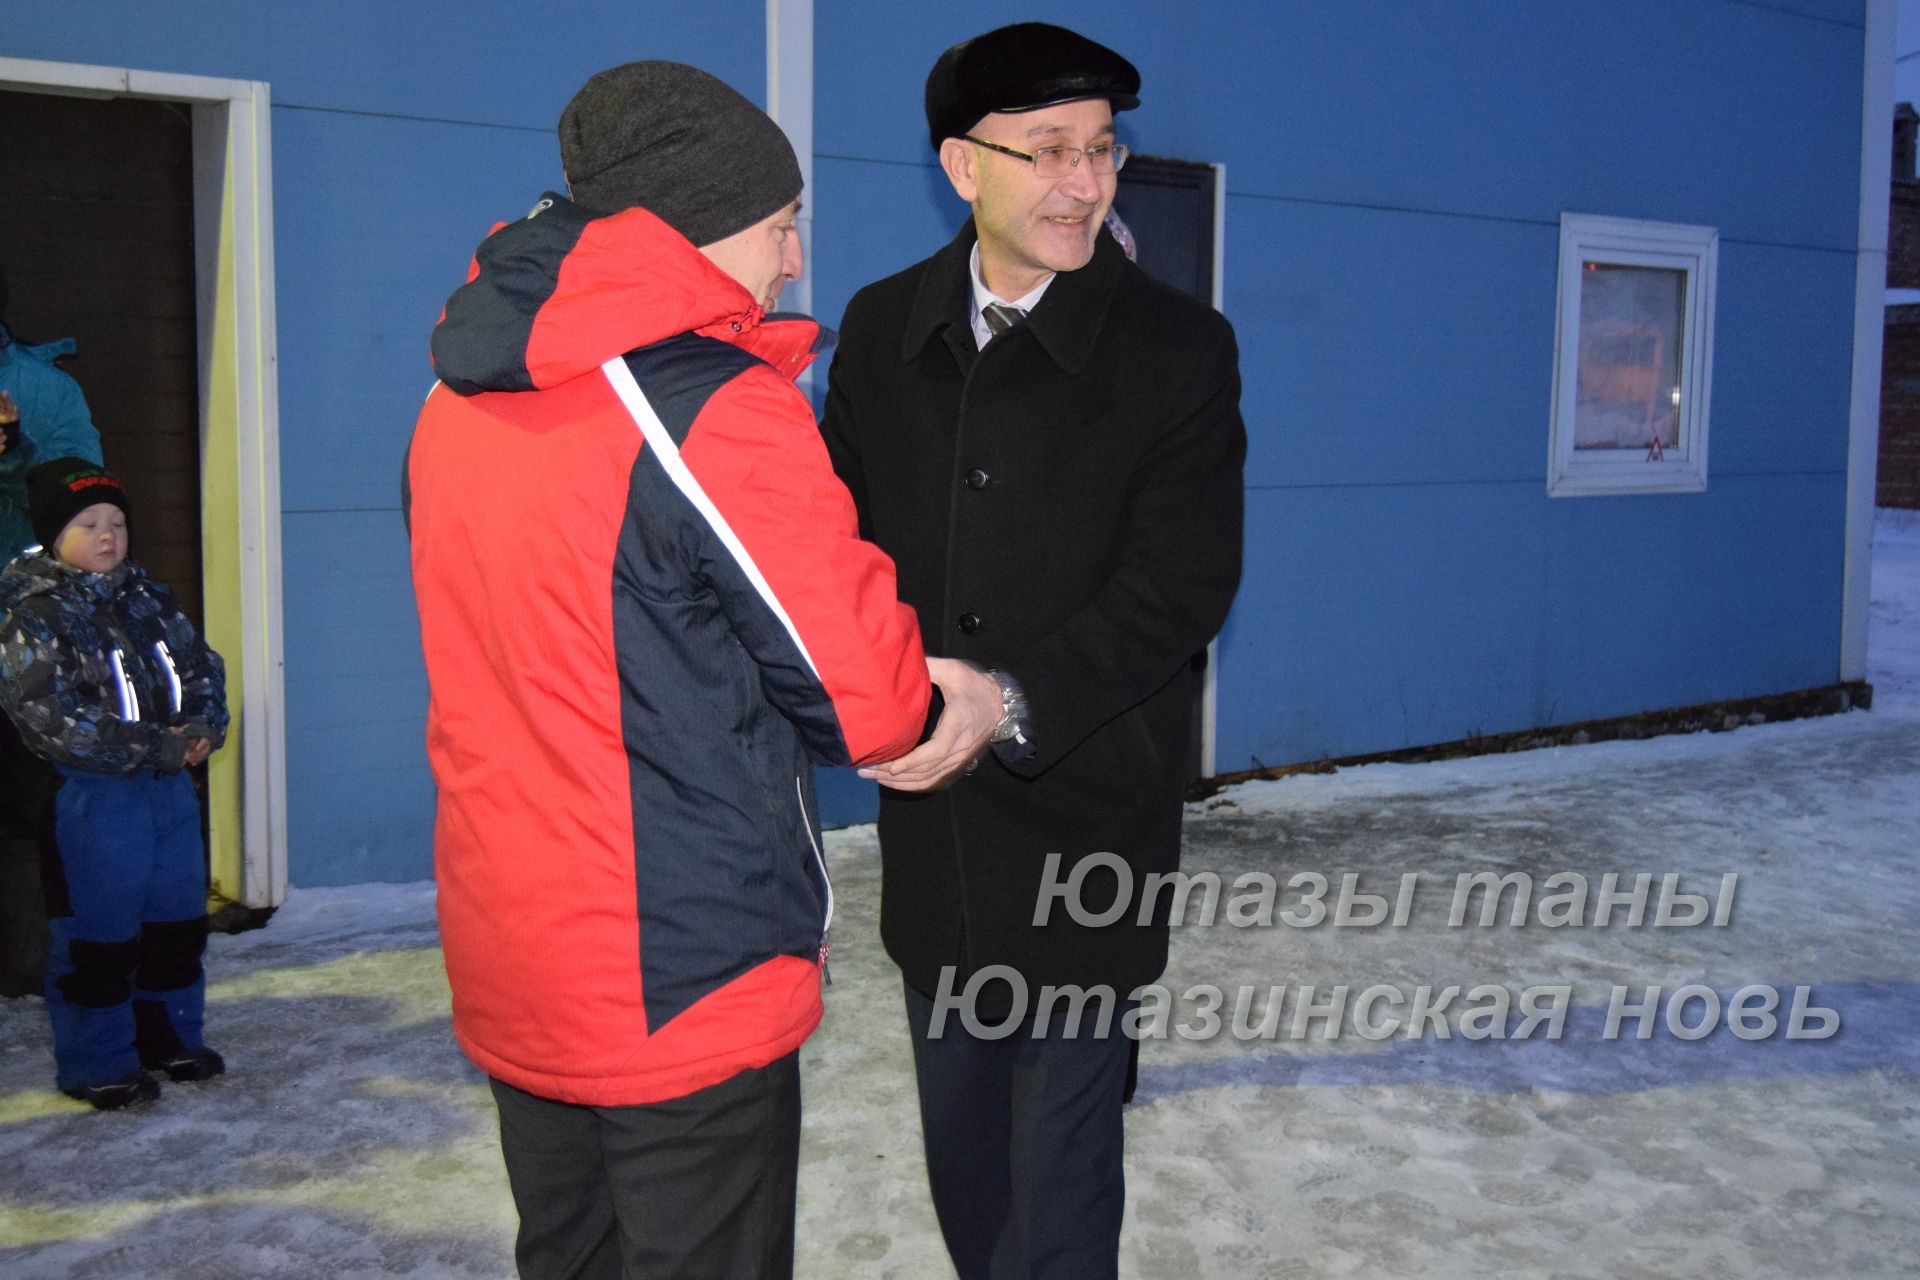 Спортсмены Уруссинского картинг-клуба "Шмель" получили ценный подарок из рук руководителя исполкома